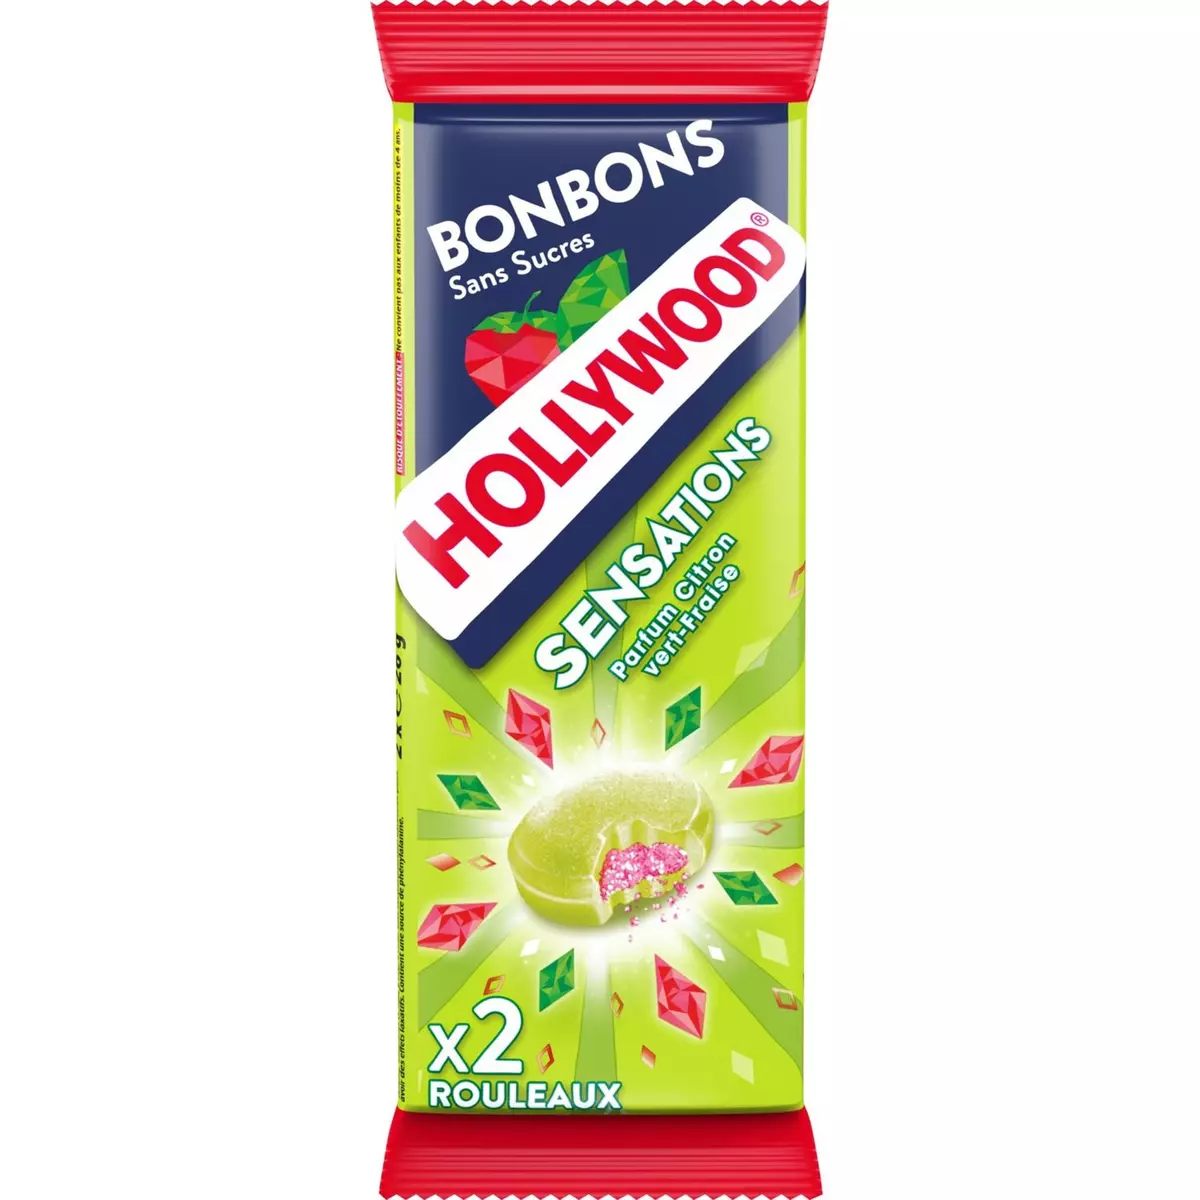 HOLLYWOOD Sensation bonbons citron vert fraise 2 rouleaux 52g